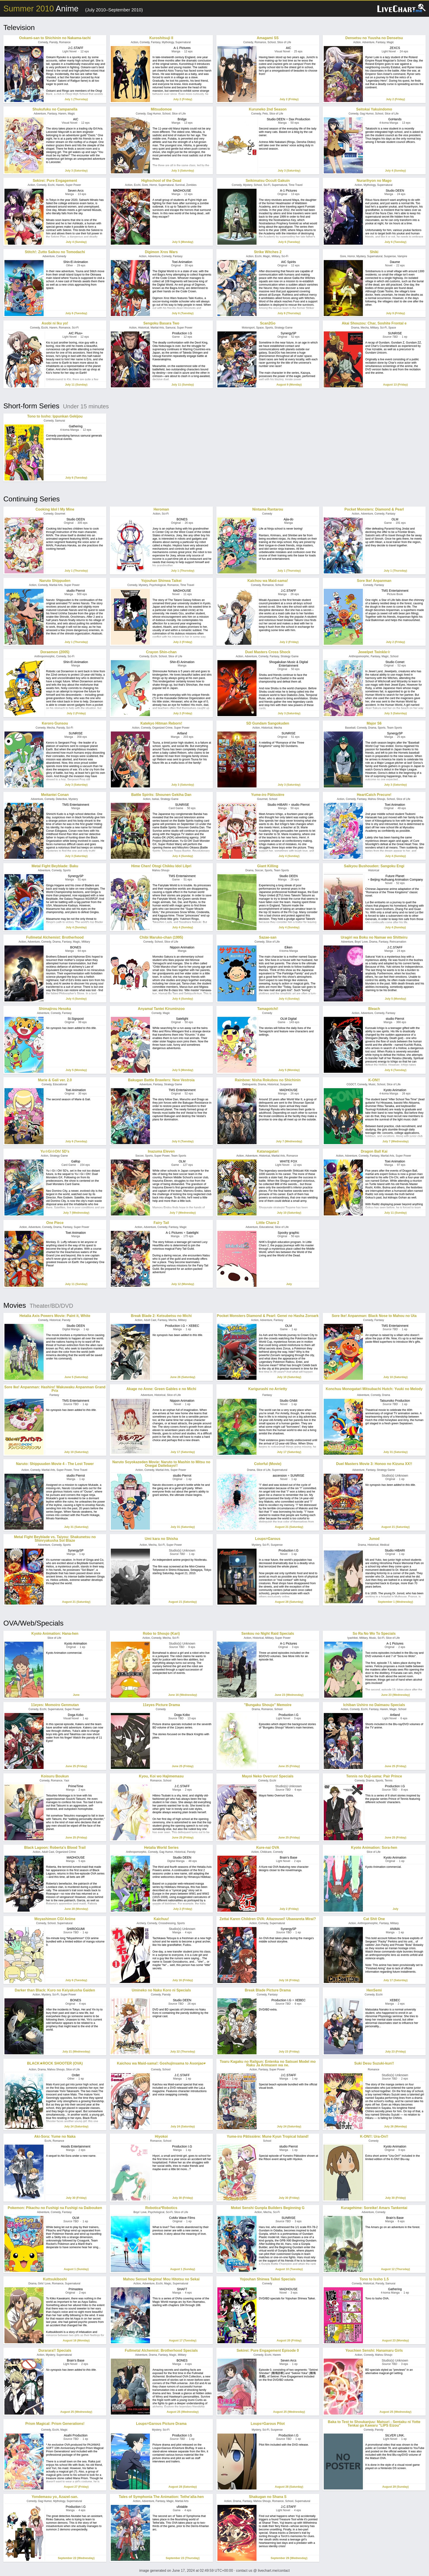 Ecchi Anime Chart